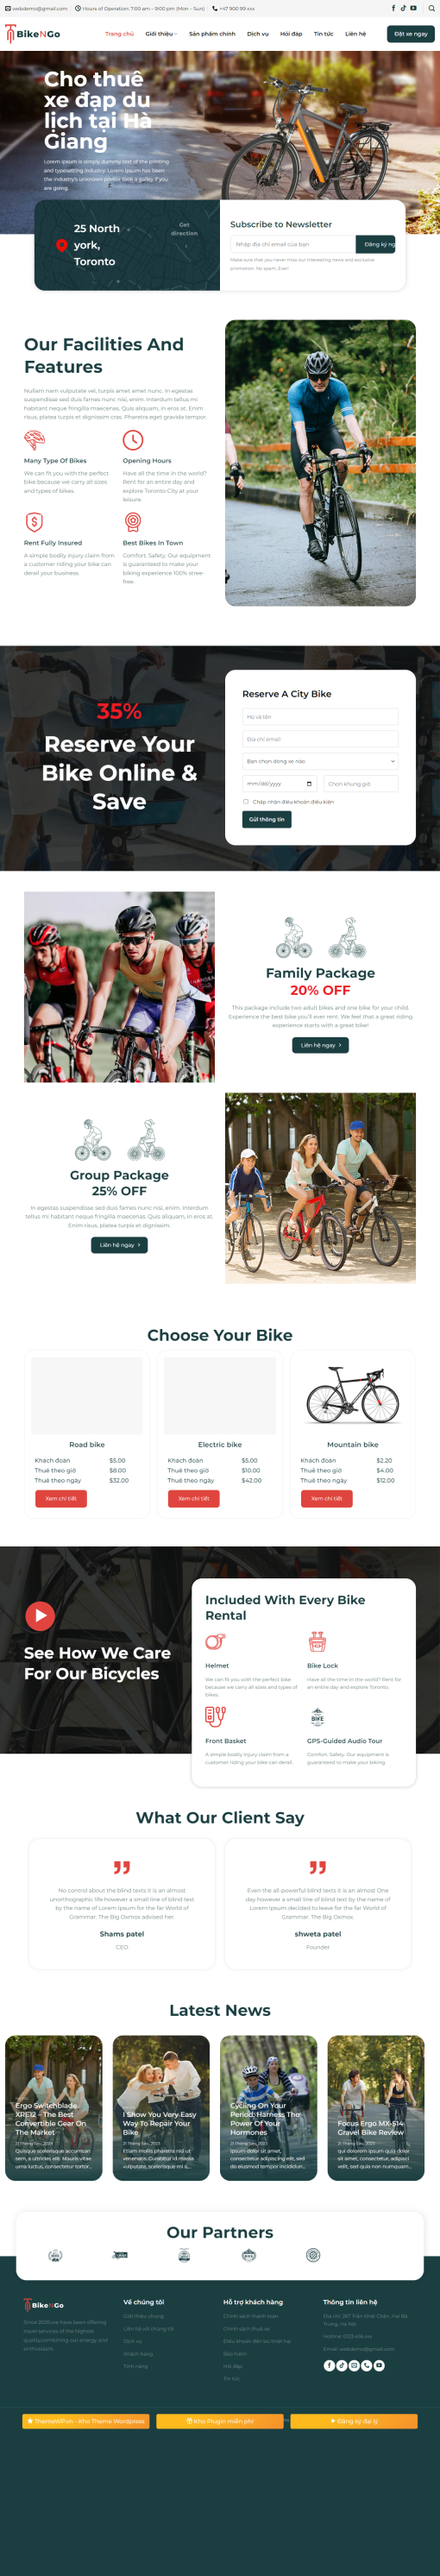 Thiết kế web xe đạp